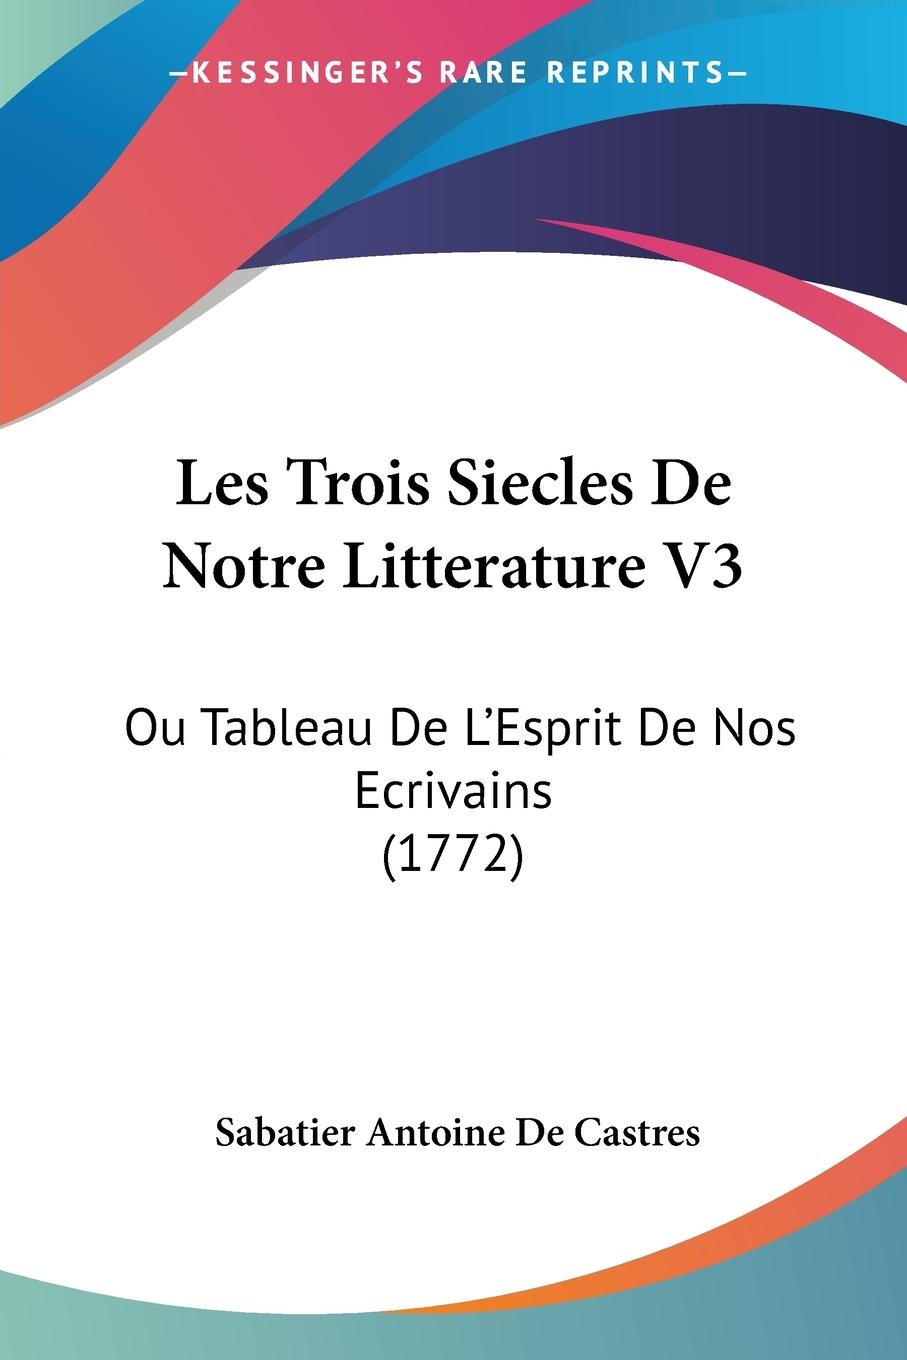 Les Trois Siecles De Notre Litterature V3 - De Castres, Sabatier Antoine